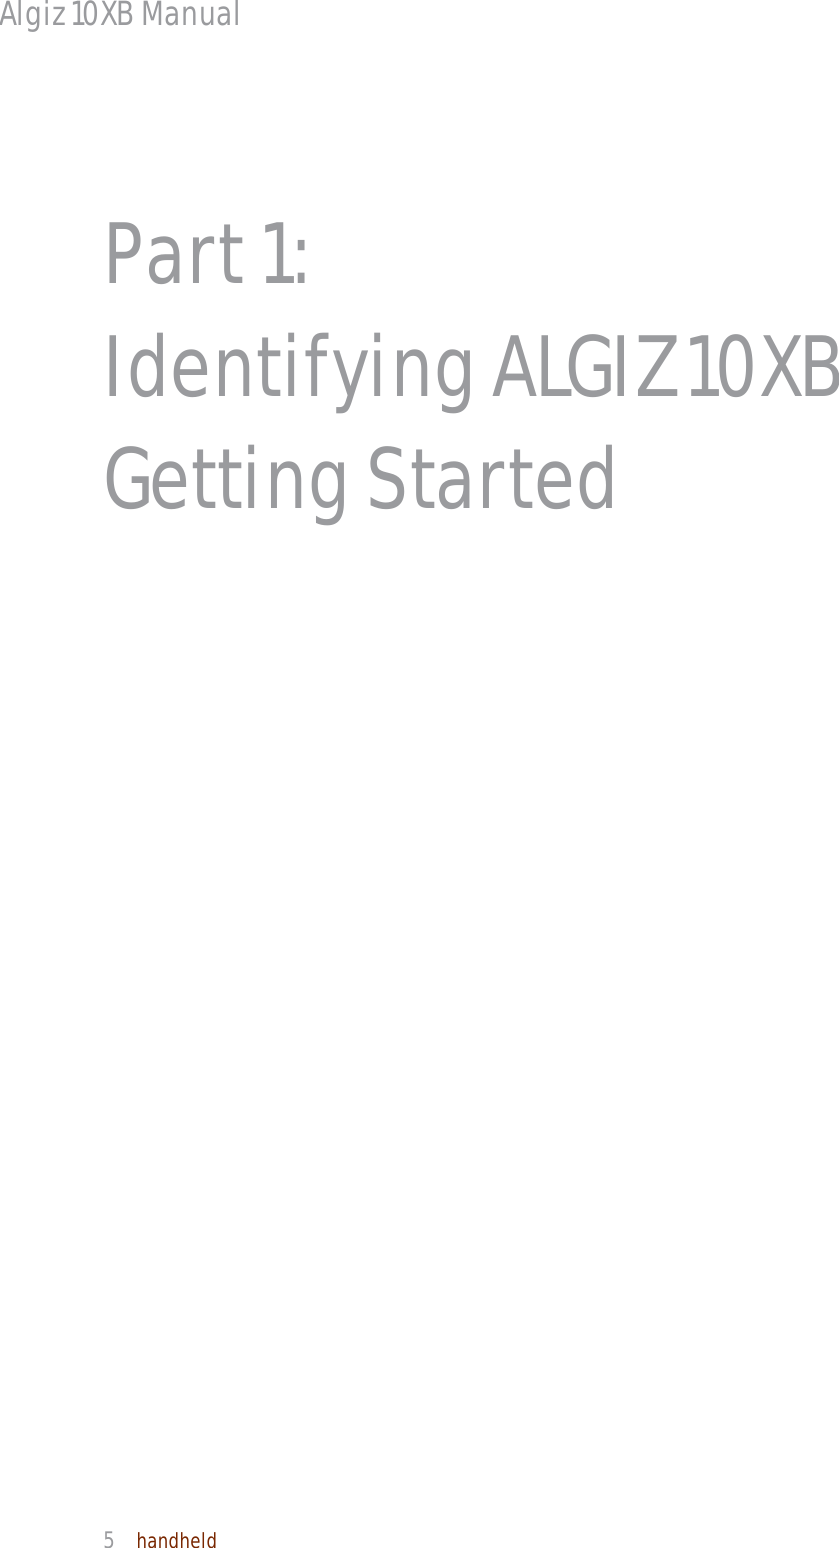 Algiz 10XB Manual  5  handheld  Part 1:   Identifying ALGIZ 10XB Getting Started 